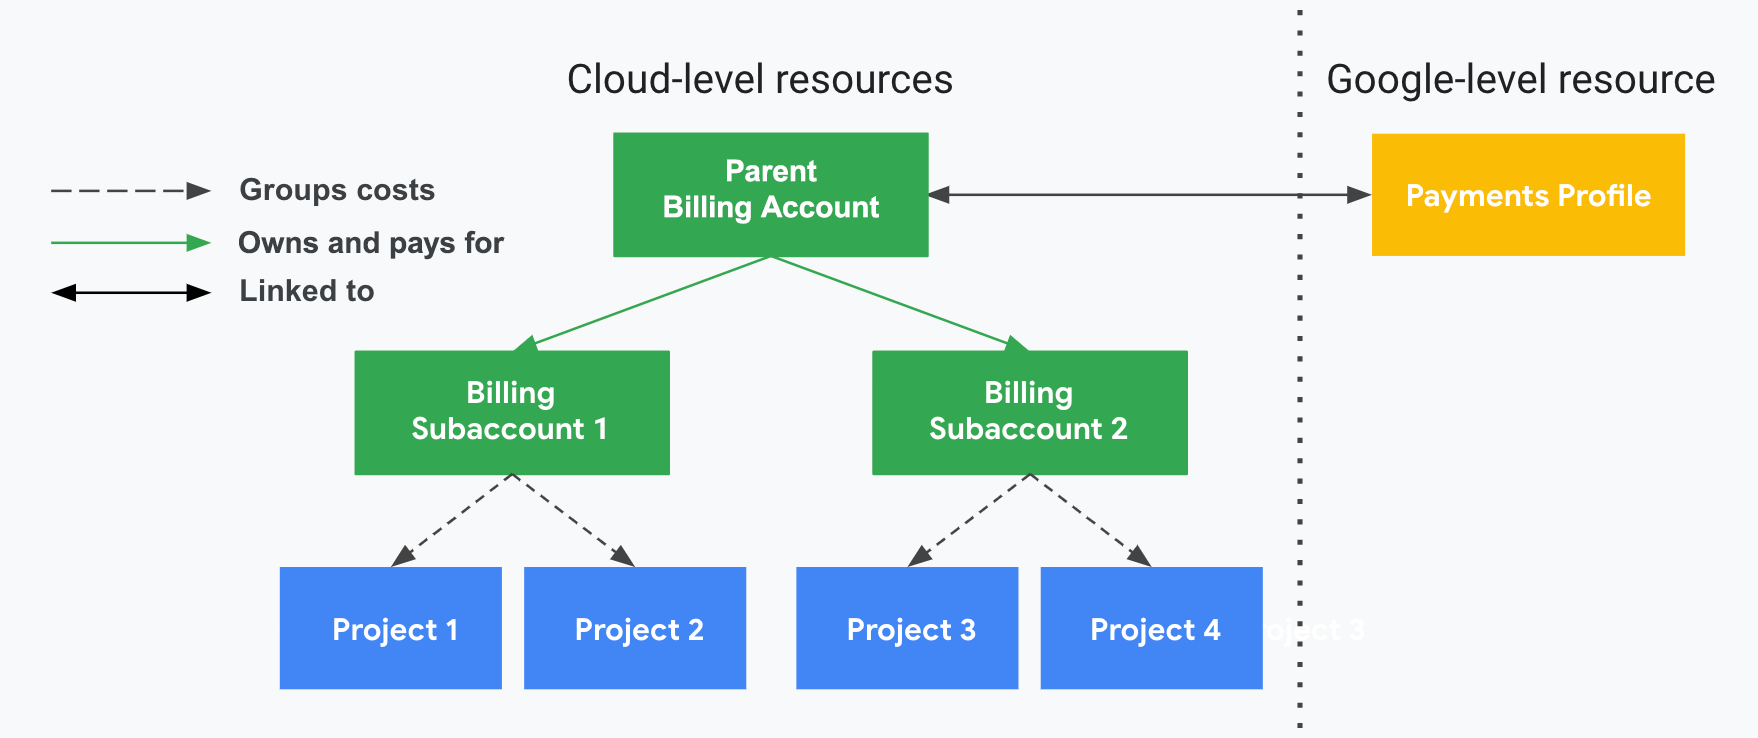 Illustre la relation entre les projets, les comptes Cloud Billing et les sous-comptes Cloud Billing, ainsi que votre profil de paiement. Un côté affiche vos ressources au niveau du cloud (compte Cloud Billing, sous-comptes et projets associés) et l'autre, divisé par une ligne pointillée verticale, affiche votre ressource Google (profil de paiement). Les coûts d'utilisation du projet sont regroupés et sous-totalisés par les sous-comptes de facturation Cloud associés. Les sous-comptes sont payés par le compte de facturation Cloud parent du revendeur, associé à votre profil de paiement.